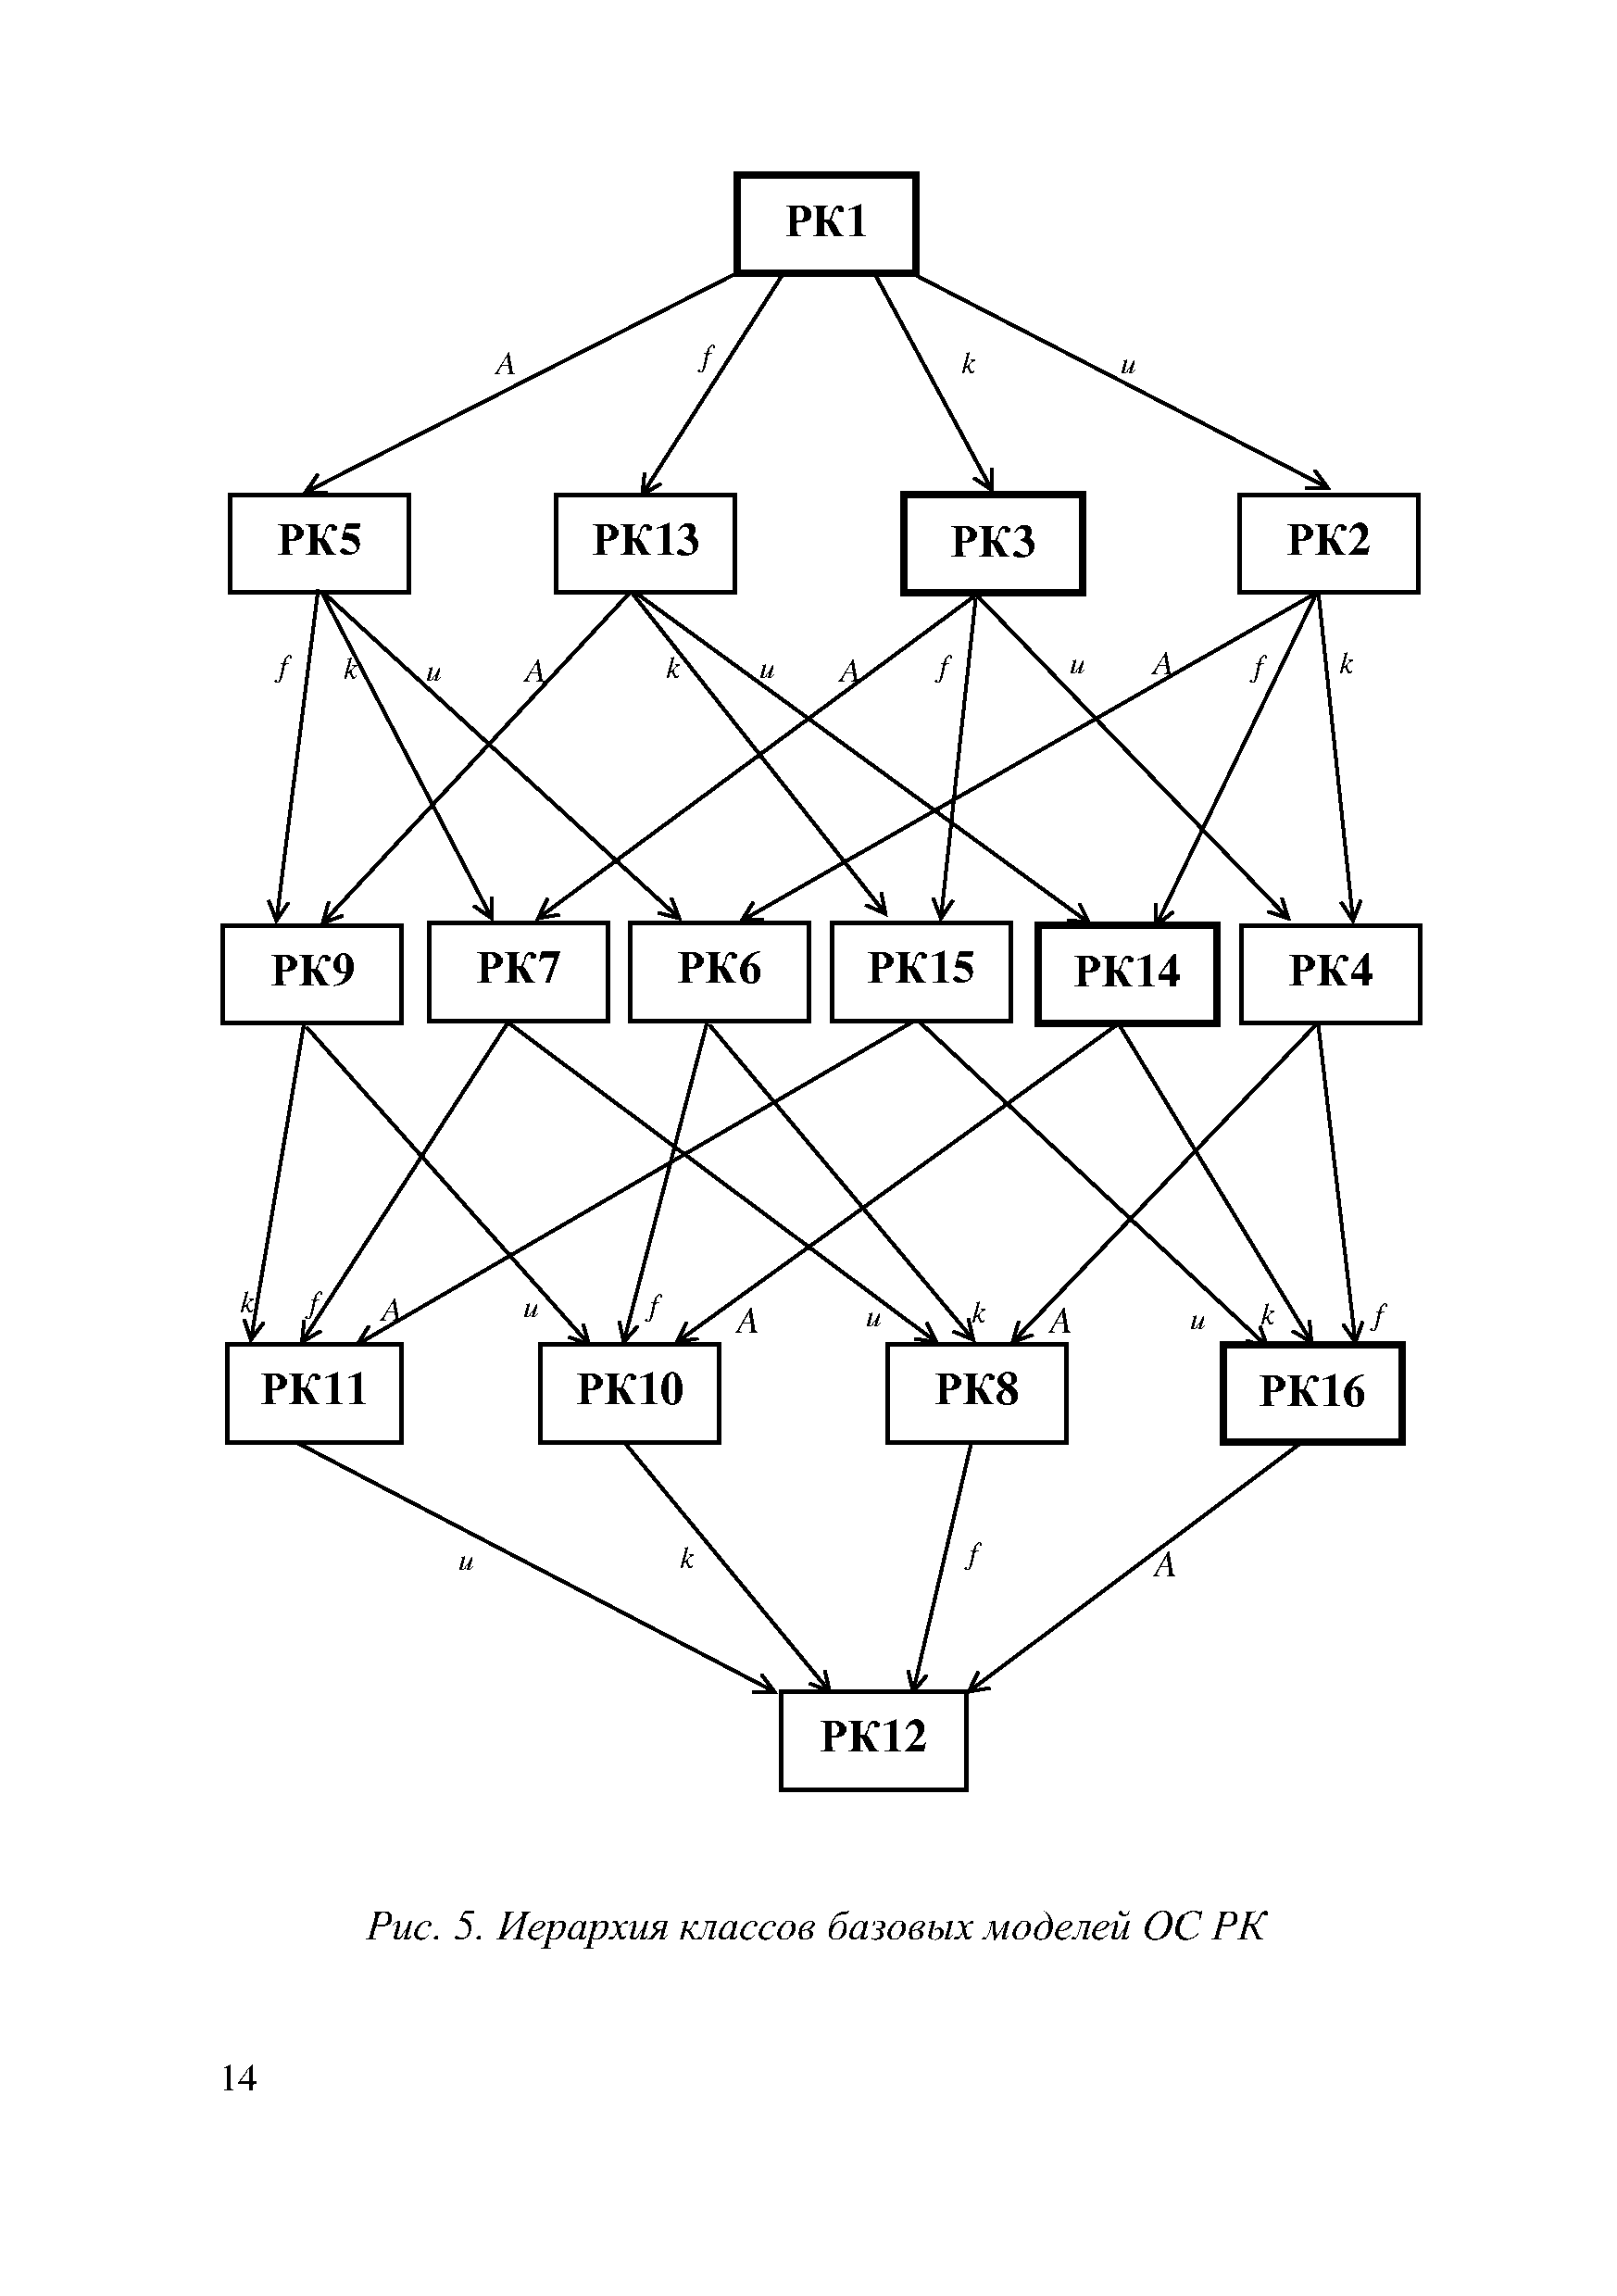 Рис. 5. Иерархия классов базовых моделей ОС РК
